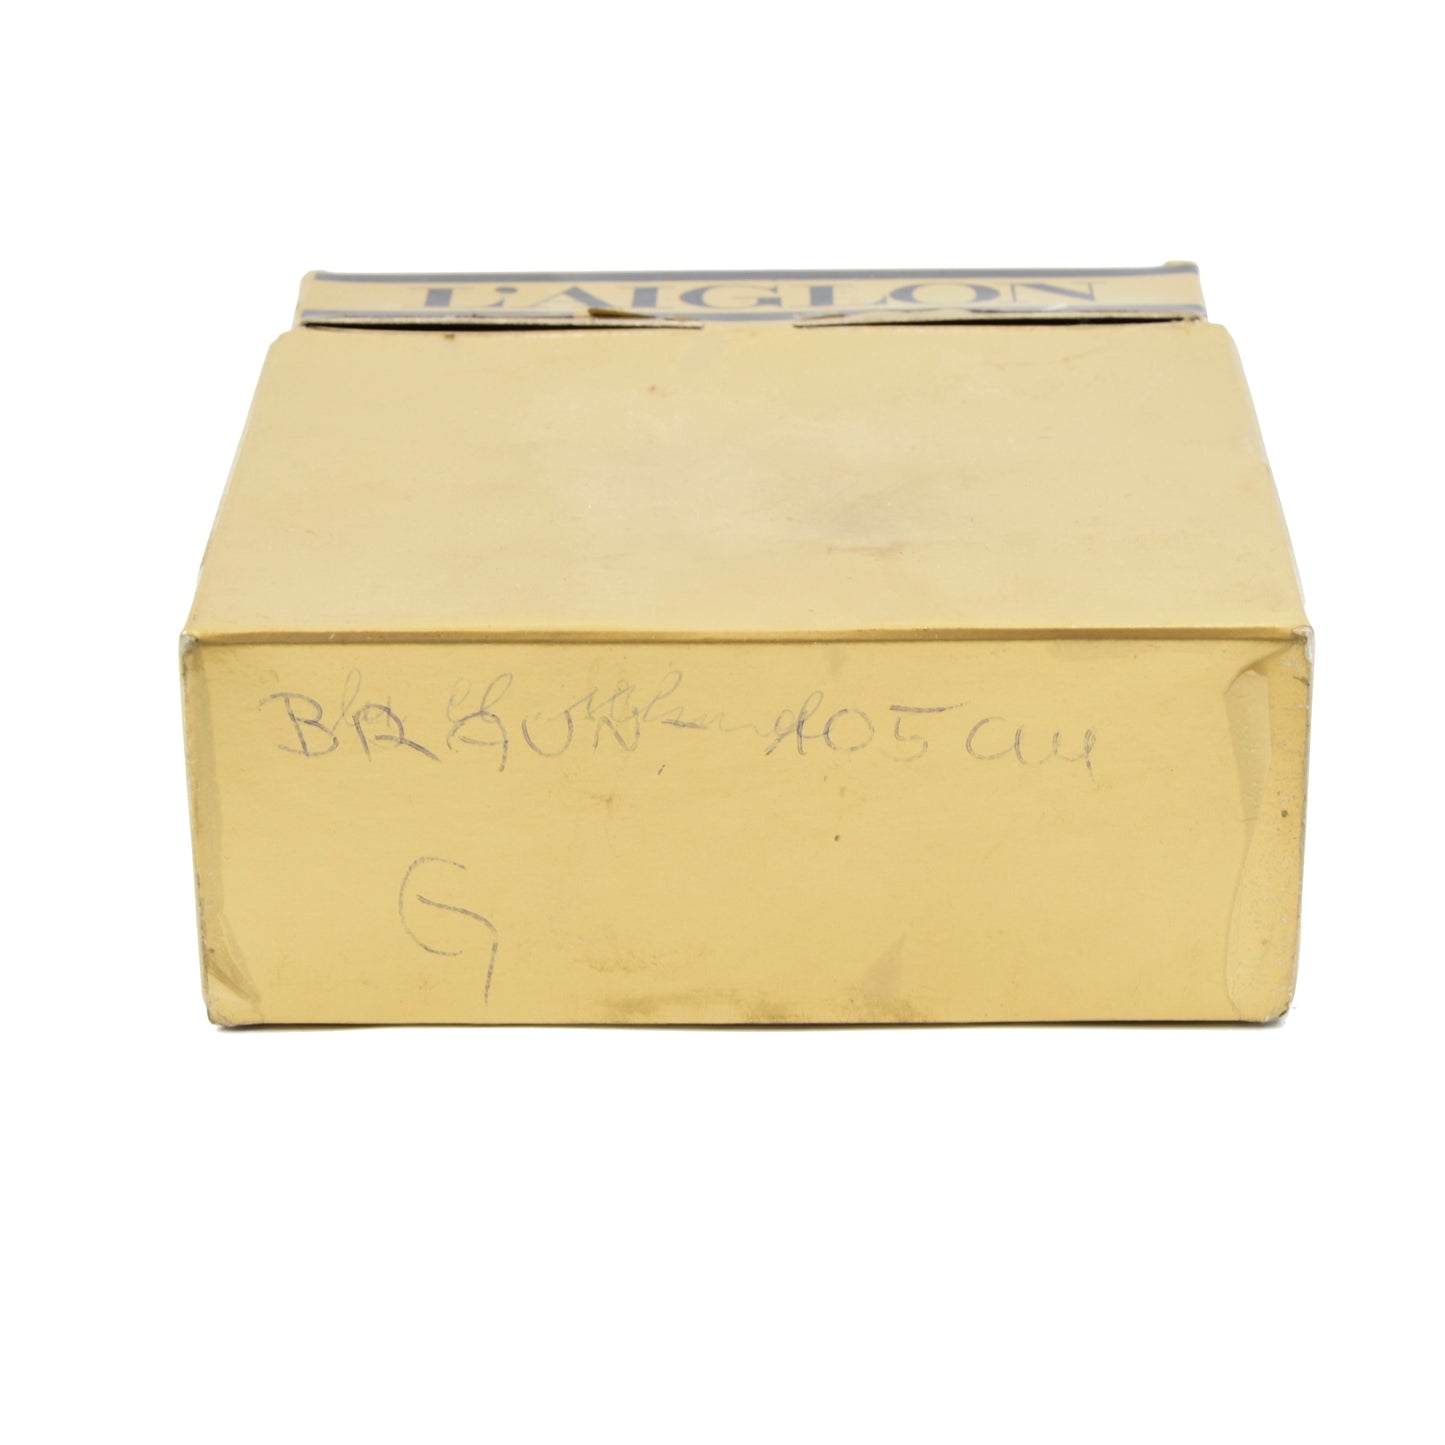 L'Aiglon Vachette Ledergürtel Größe 42/105 - Braun